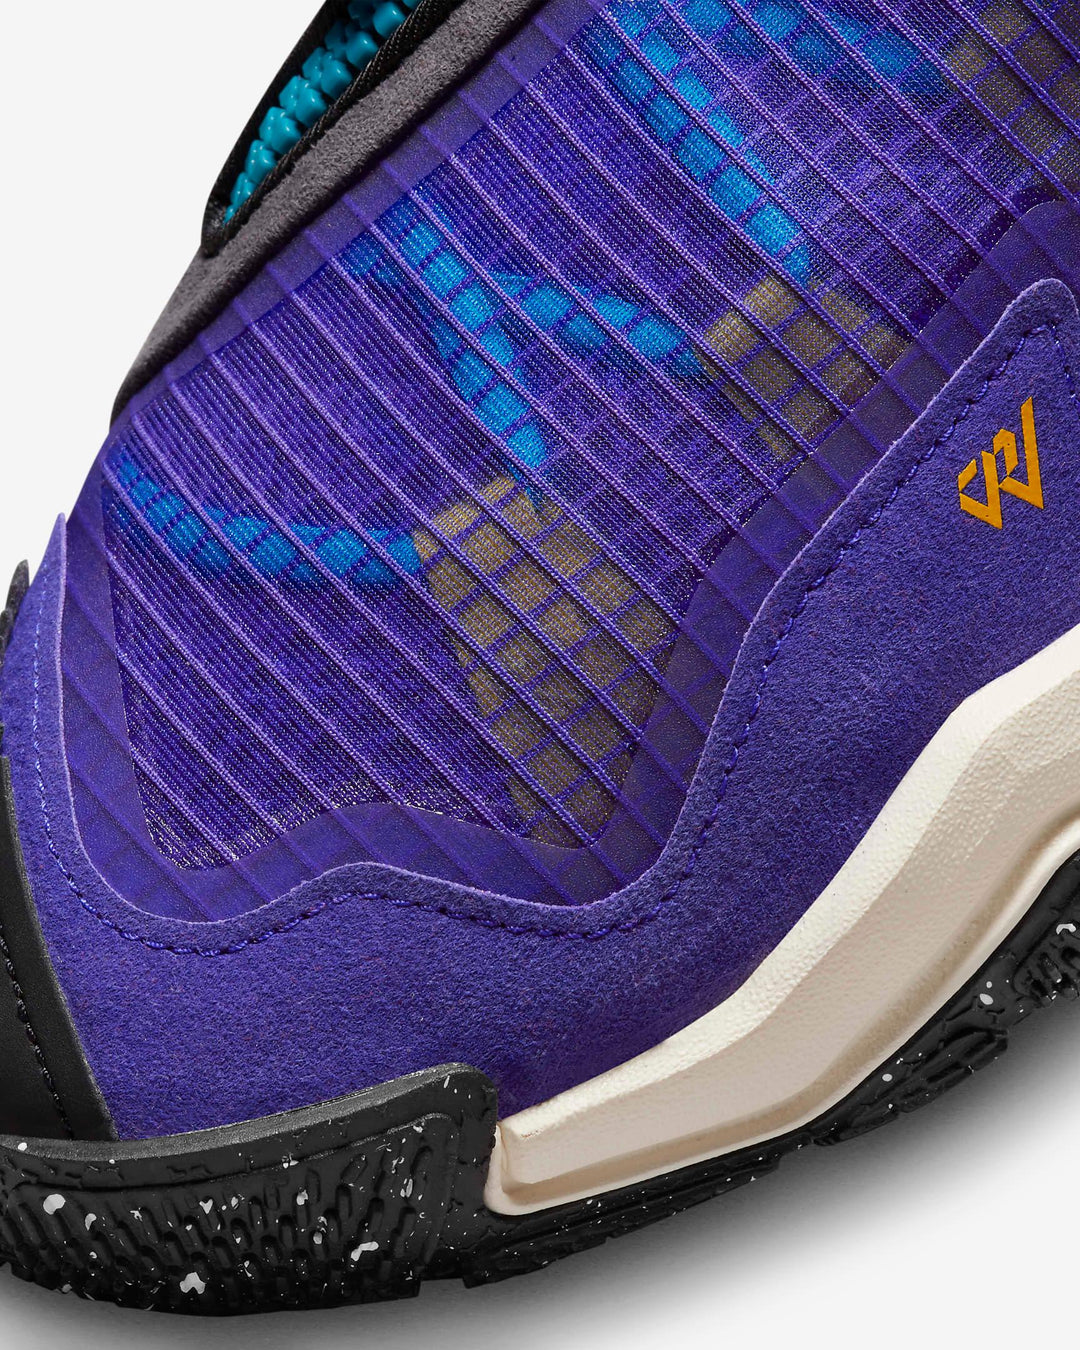 Giày Nike Jordan Why Not .6 PF Men Shoes #Bright Concord - Kallos Vietnam